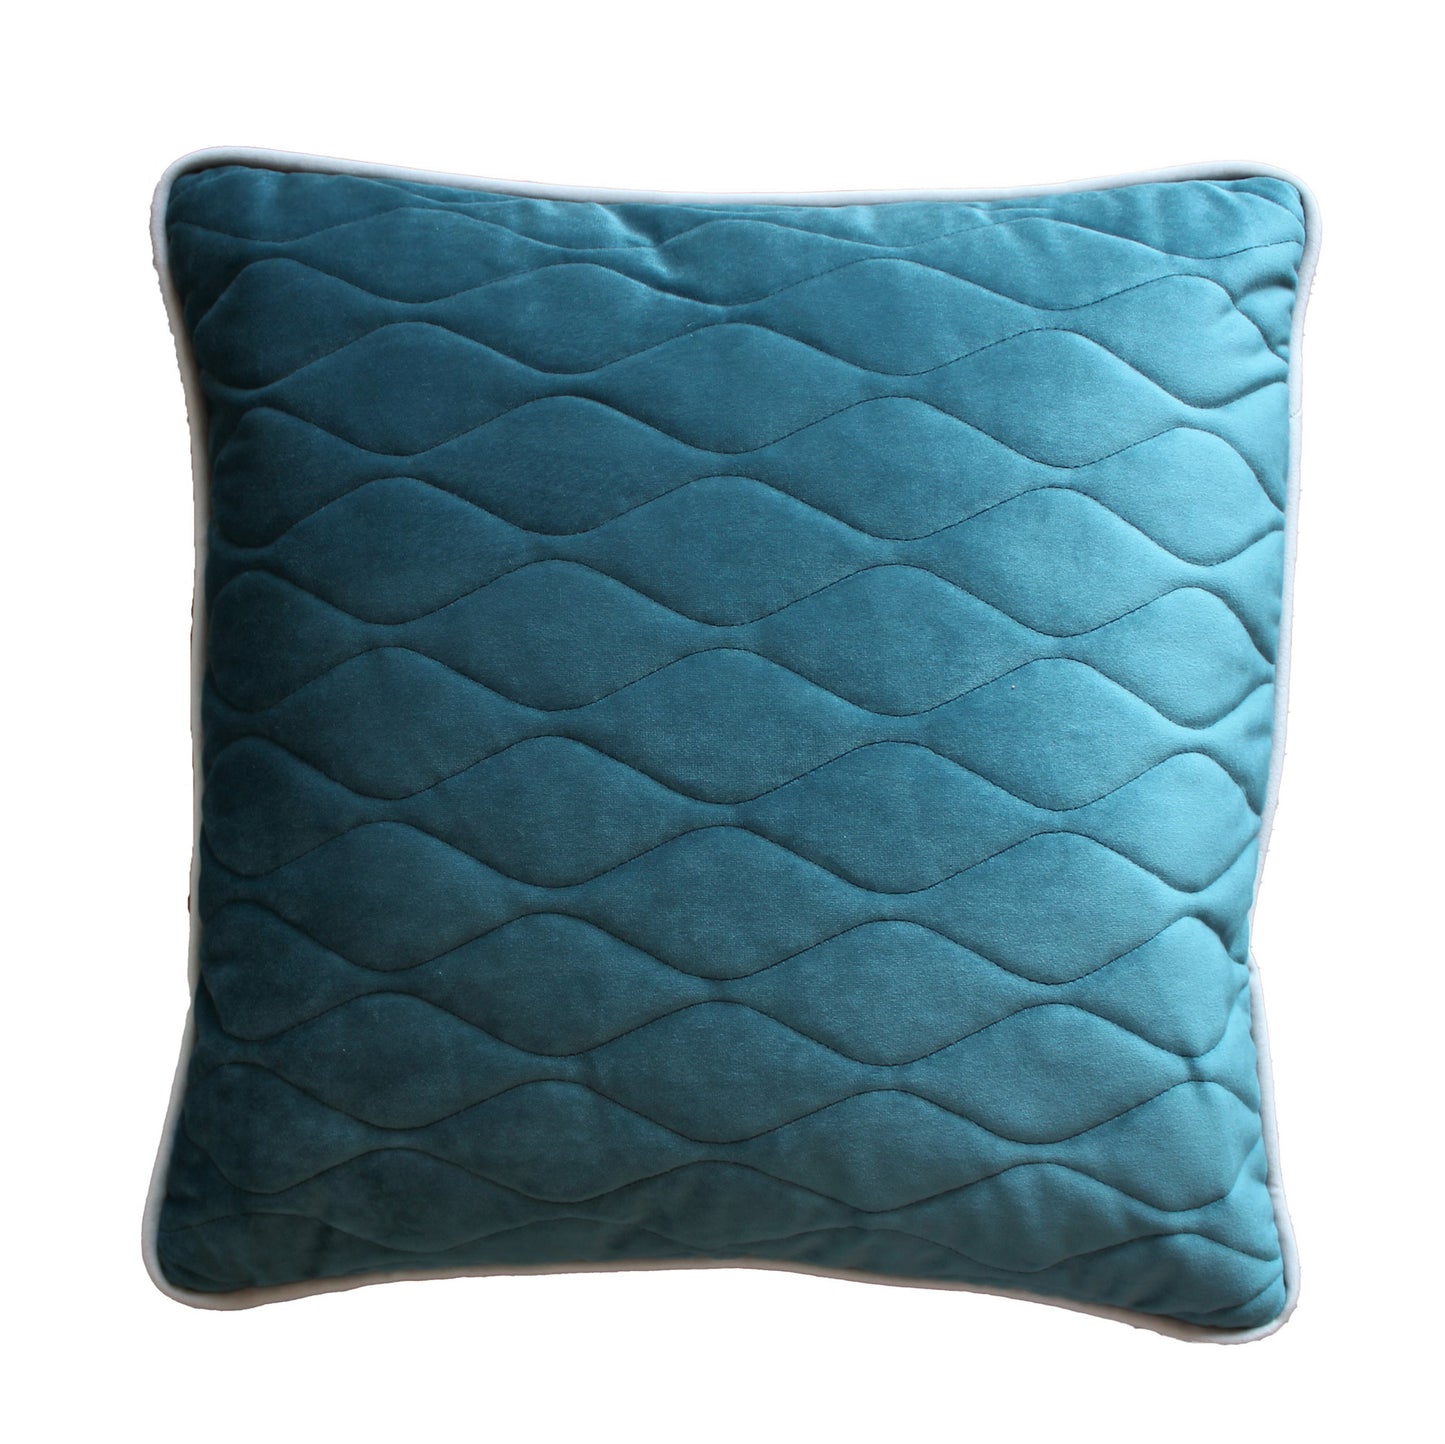 gestepptes Kissen in Maß 50 x 50 cm in blau mit geometrischen Linien